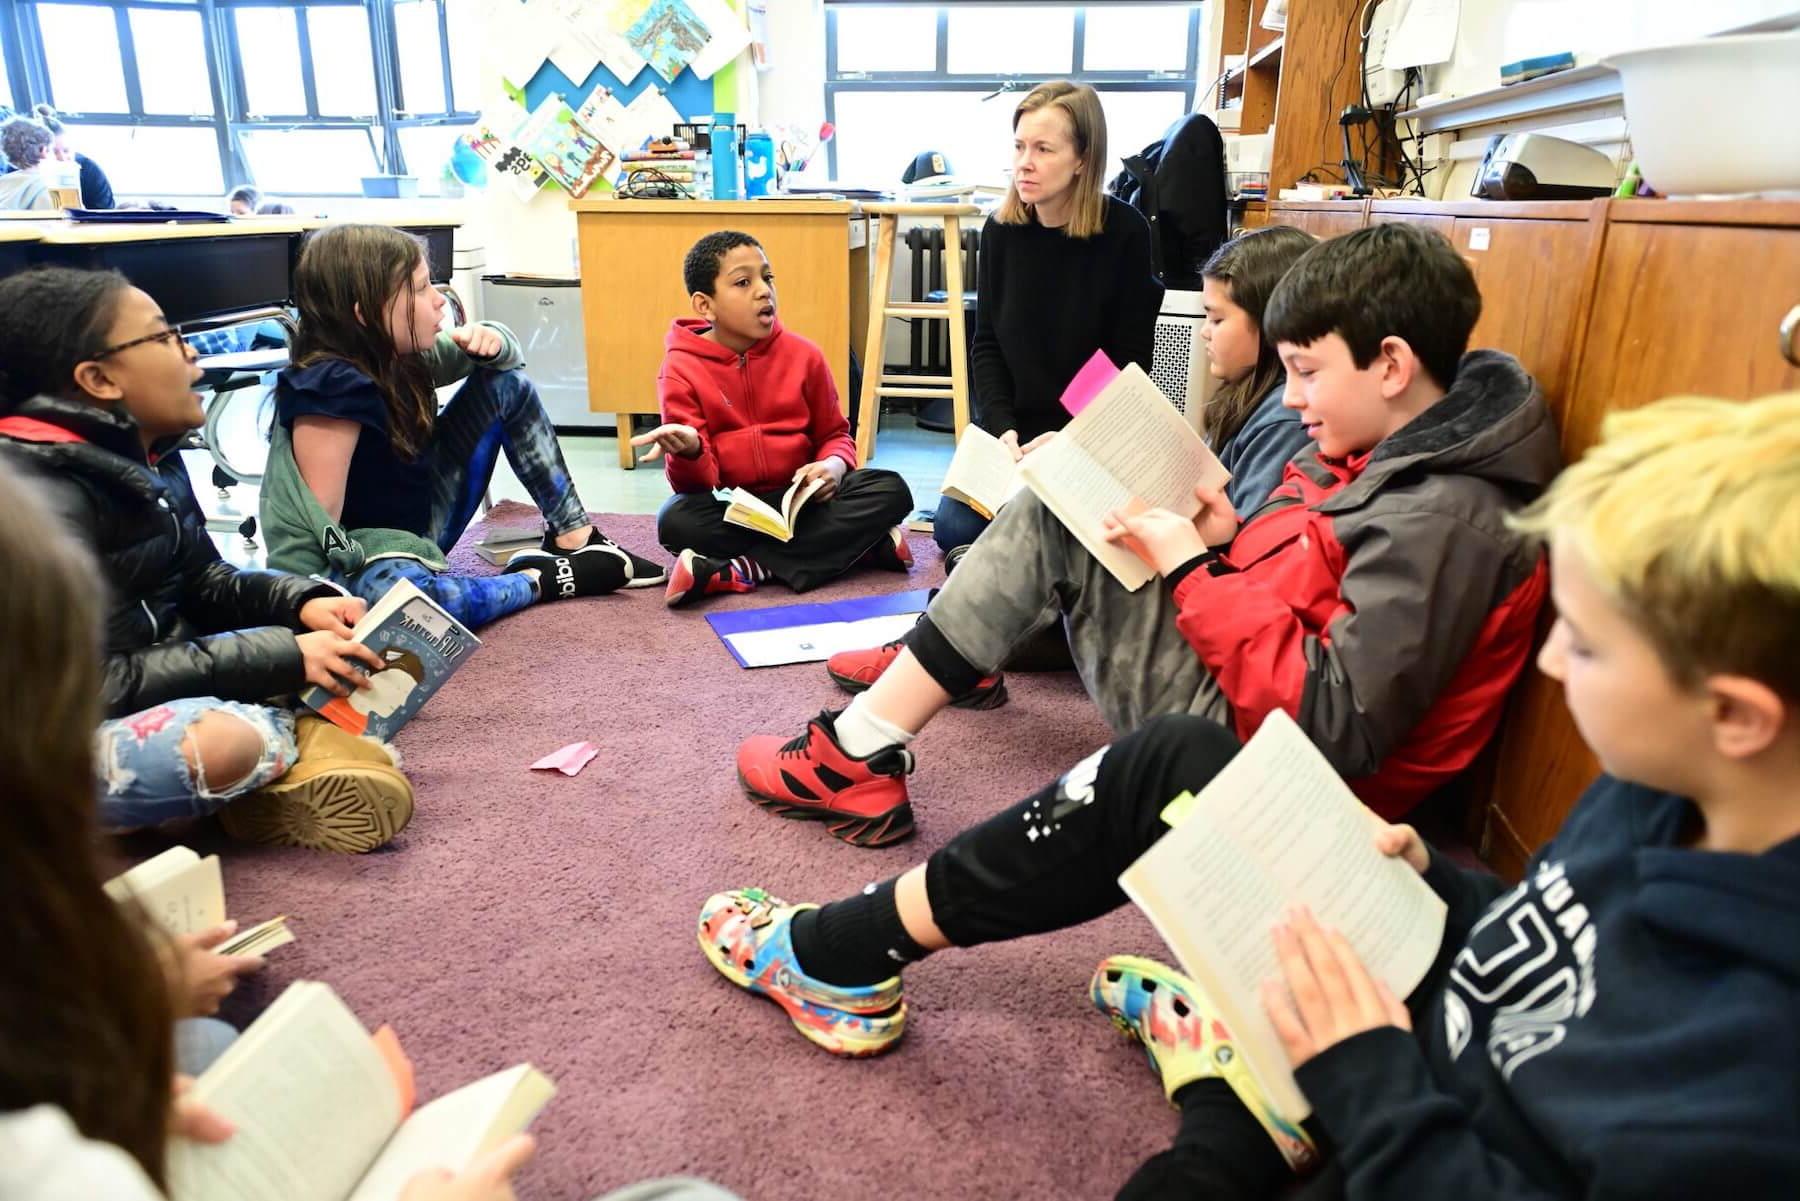 菲尔德斯顿低年级的学生围成一圈，和老师讨论一本关于神经多样性的书.